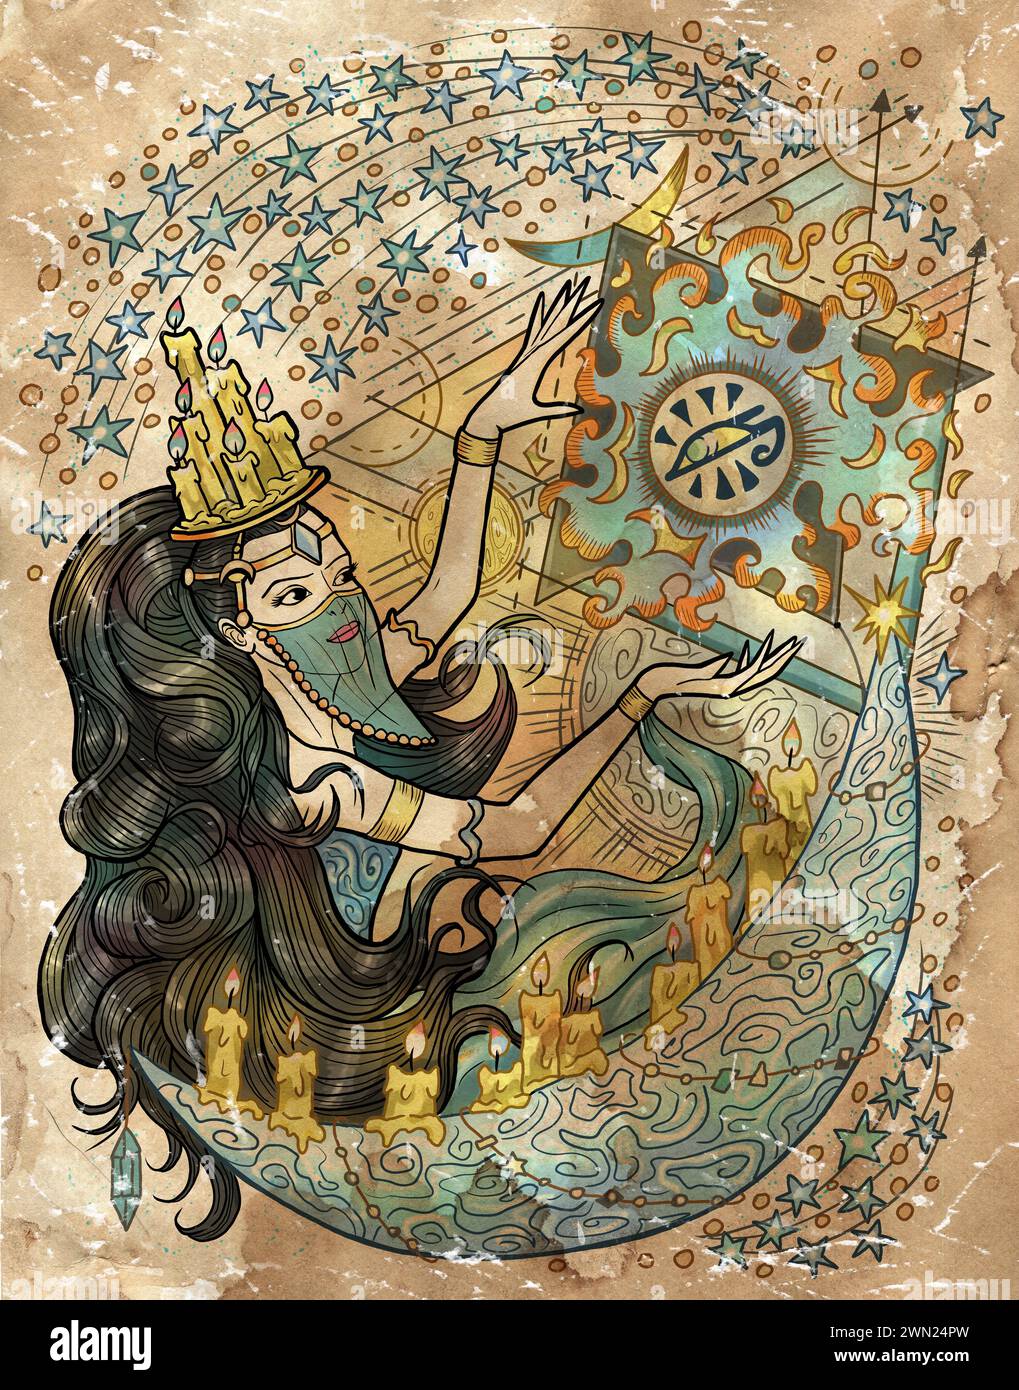 Illustration mit Fantasy-Gravur mit wunderschöner arabischer Frau als Hexe oder Magier auf strukturiertem Hintergrund. Handgezeichnete farbenfrohe Grafik mit ethnischen Co Stockfoto